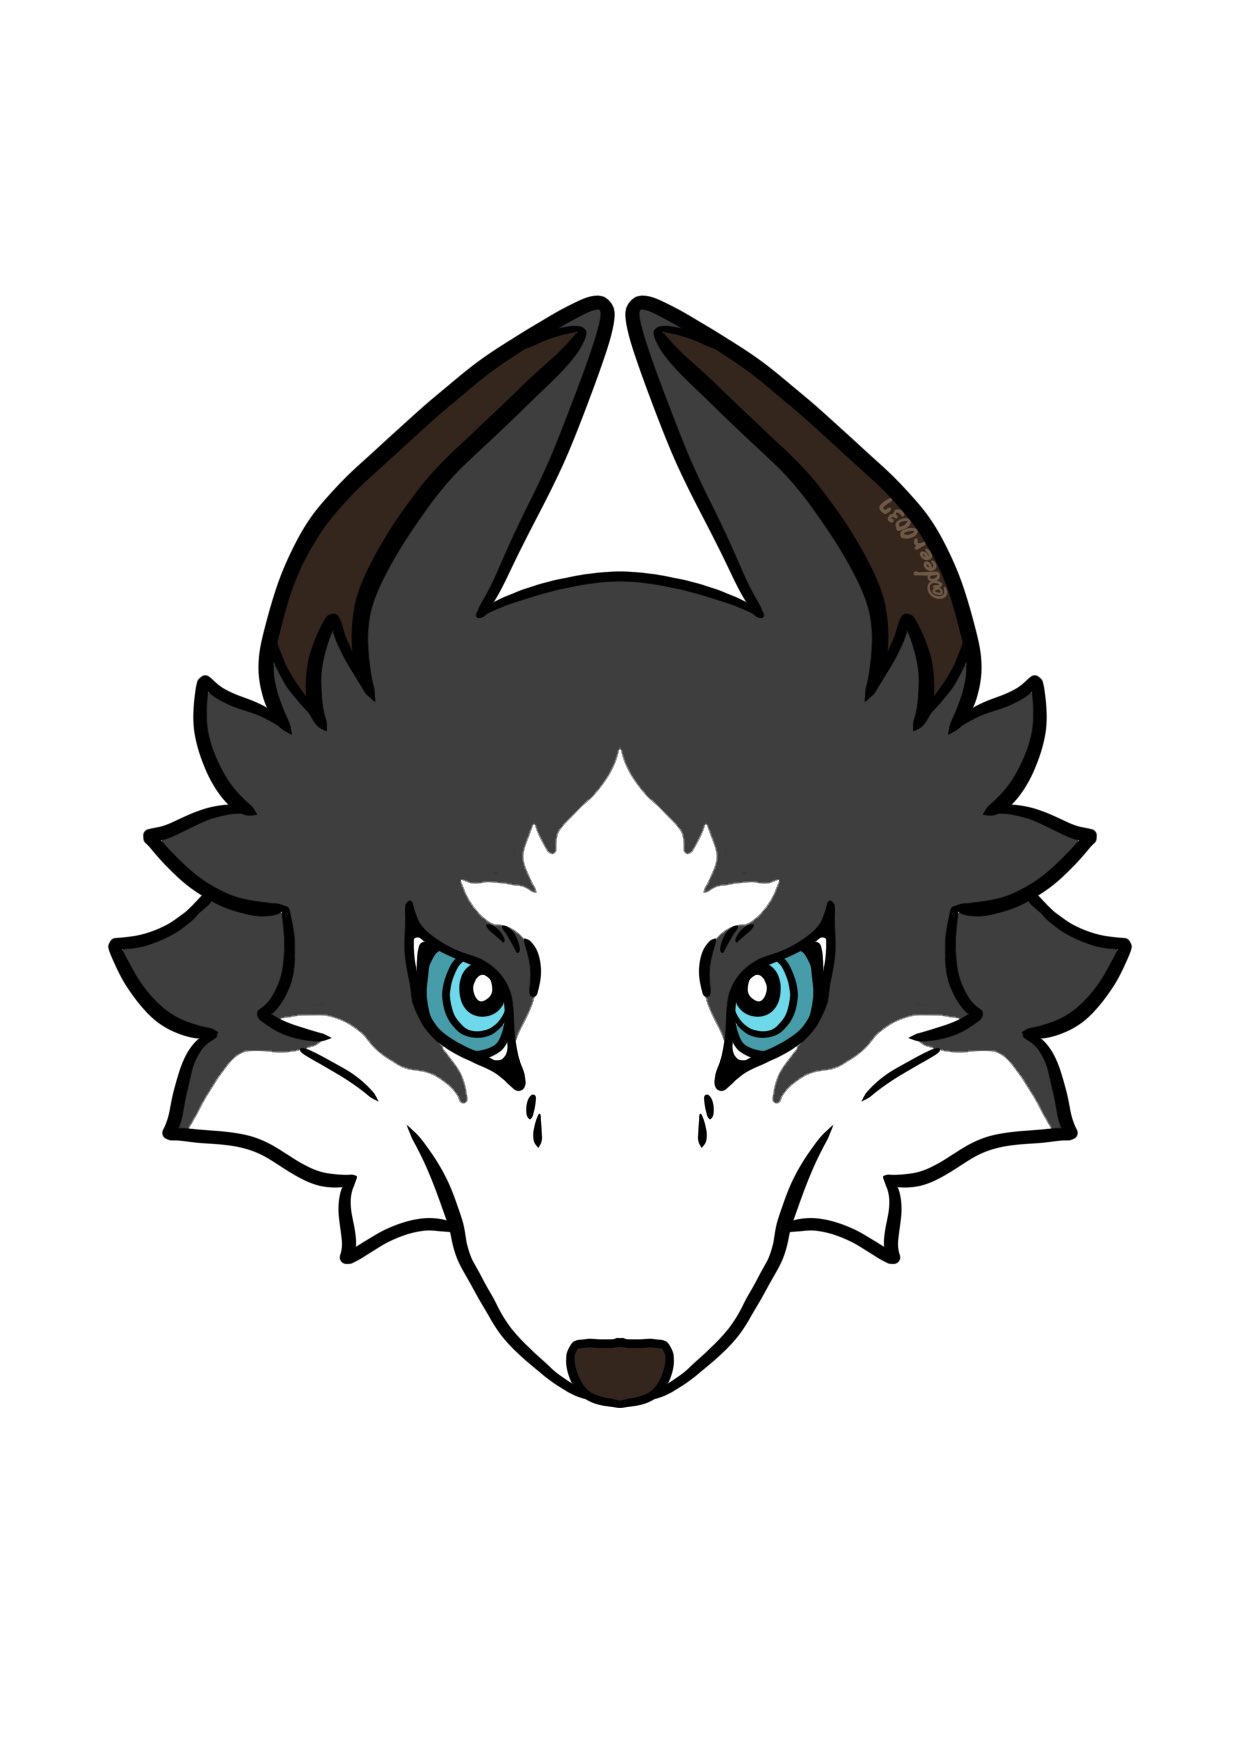 Twitter 上的 Deer 今日のフリーアイコンは犬 白と黒はシンプルだけどかっこいいよね フリーアイコン オリジナル デジタルイラスト T Co Xc7dzuau Twitter